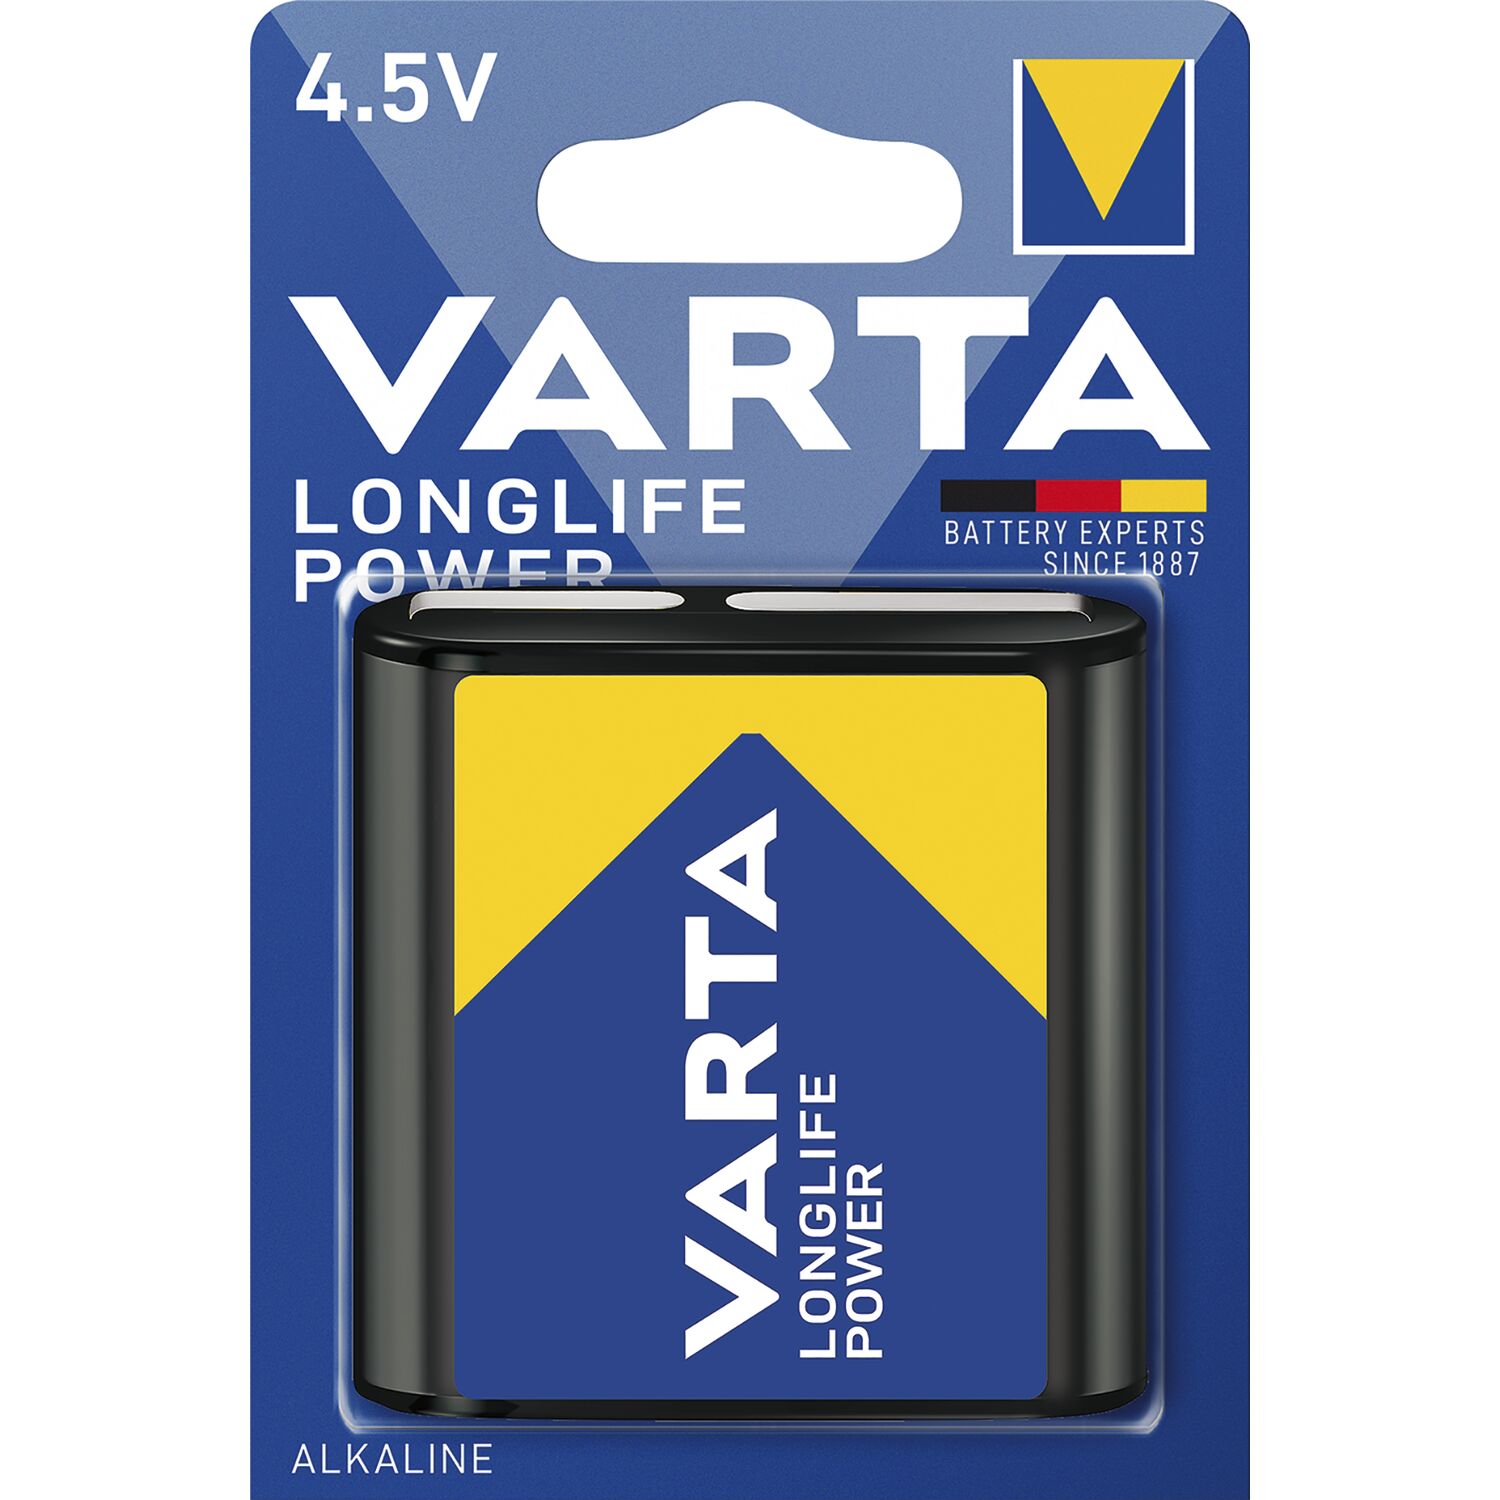 VARTA Batterie Longlife Power 3LR12 4.5V 1 Stück